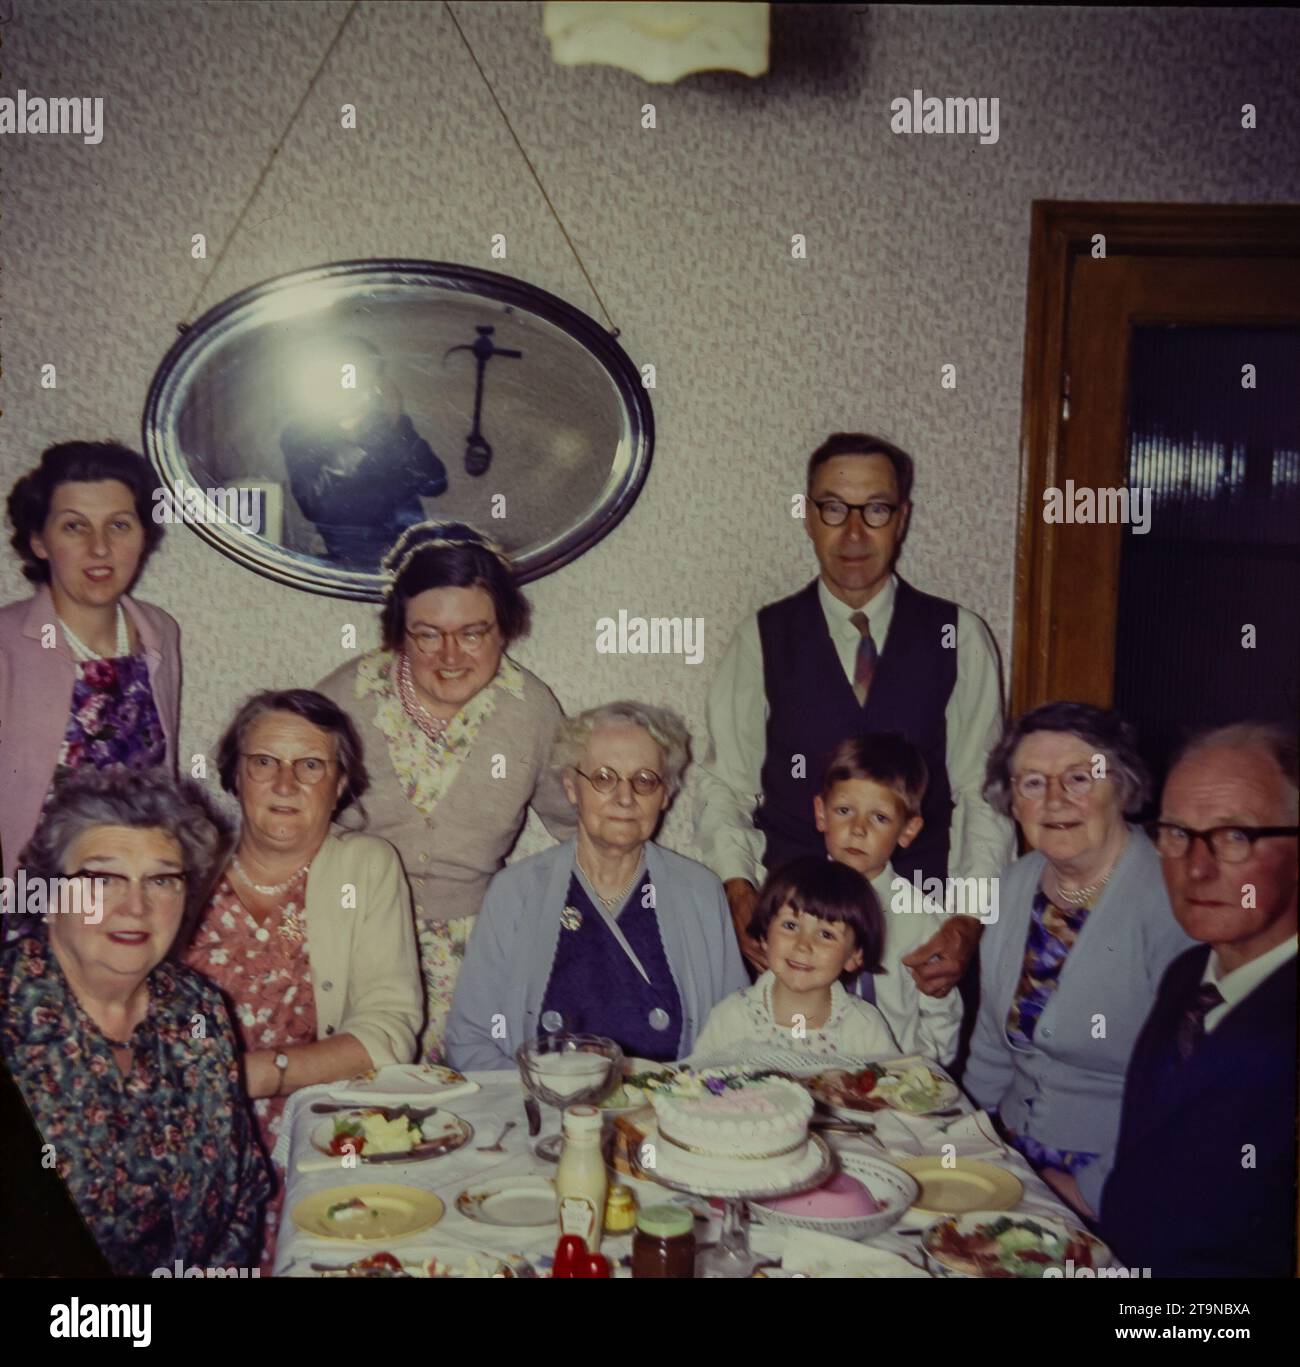 Eine Großfamilie, die 1962 Geburtstag feiert. Es gibt vier Generationen von Familien, die um einen Tisch sitzen. Das Foto zeigt einen Speisesaal aus den 1960er Jahren, Mode aus den 1960er Jahren und einen Nachmittagstee mit Salat, Blancmange und Kuchen. Dies ist ein Foto, das von der Originalfolie aufgenommen wurde. Stockfoto